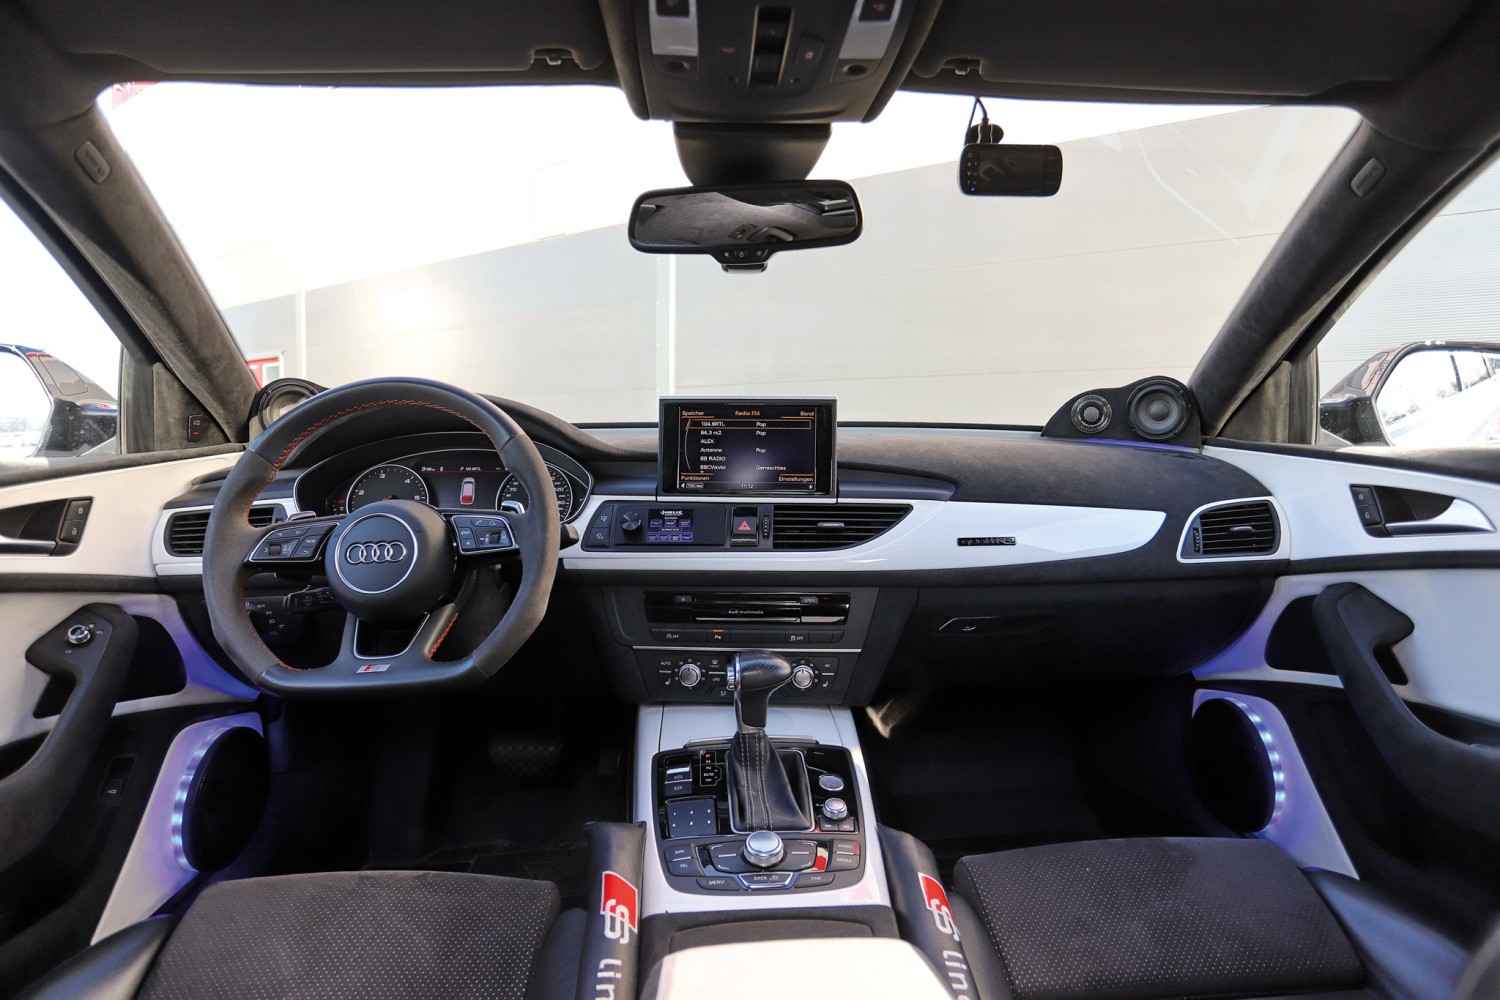 CAR HIFI INSTALLATION Helix Einbau in Audi A6 Avant im Test, Bild 6